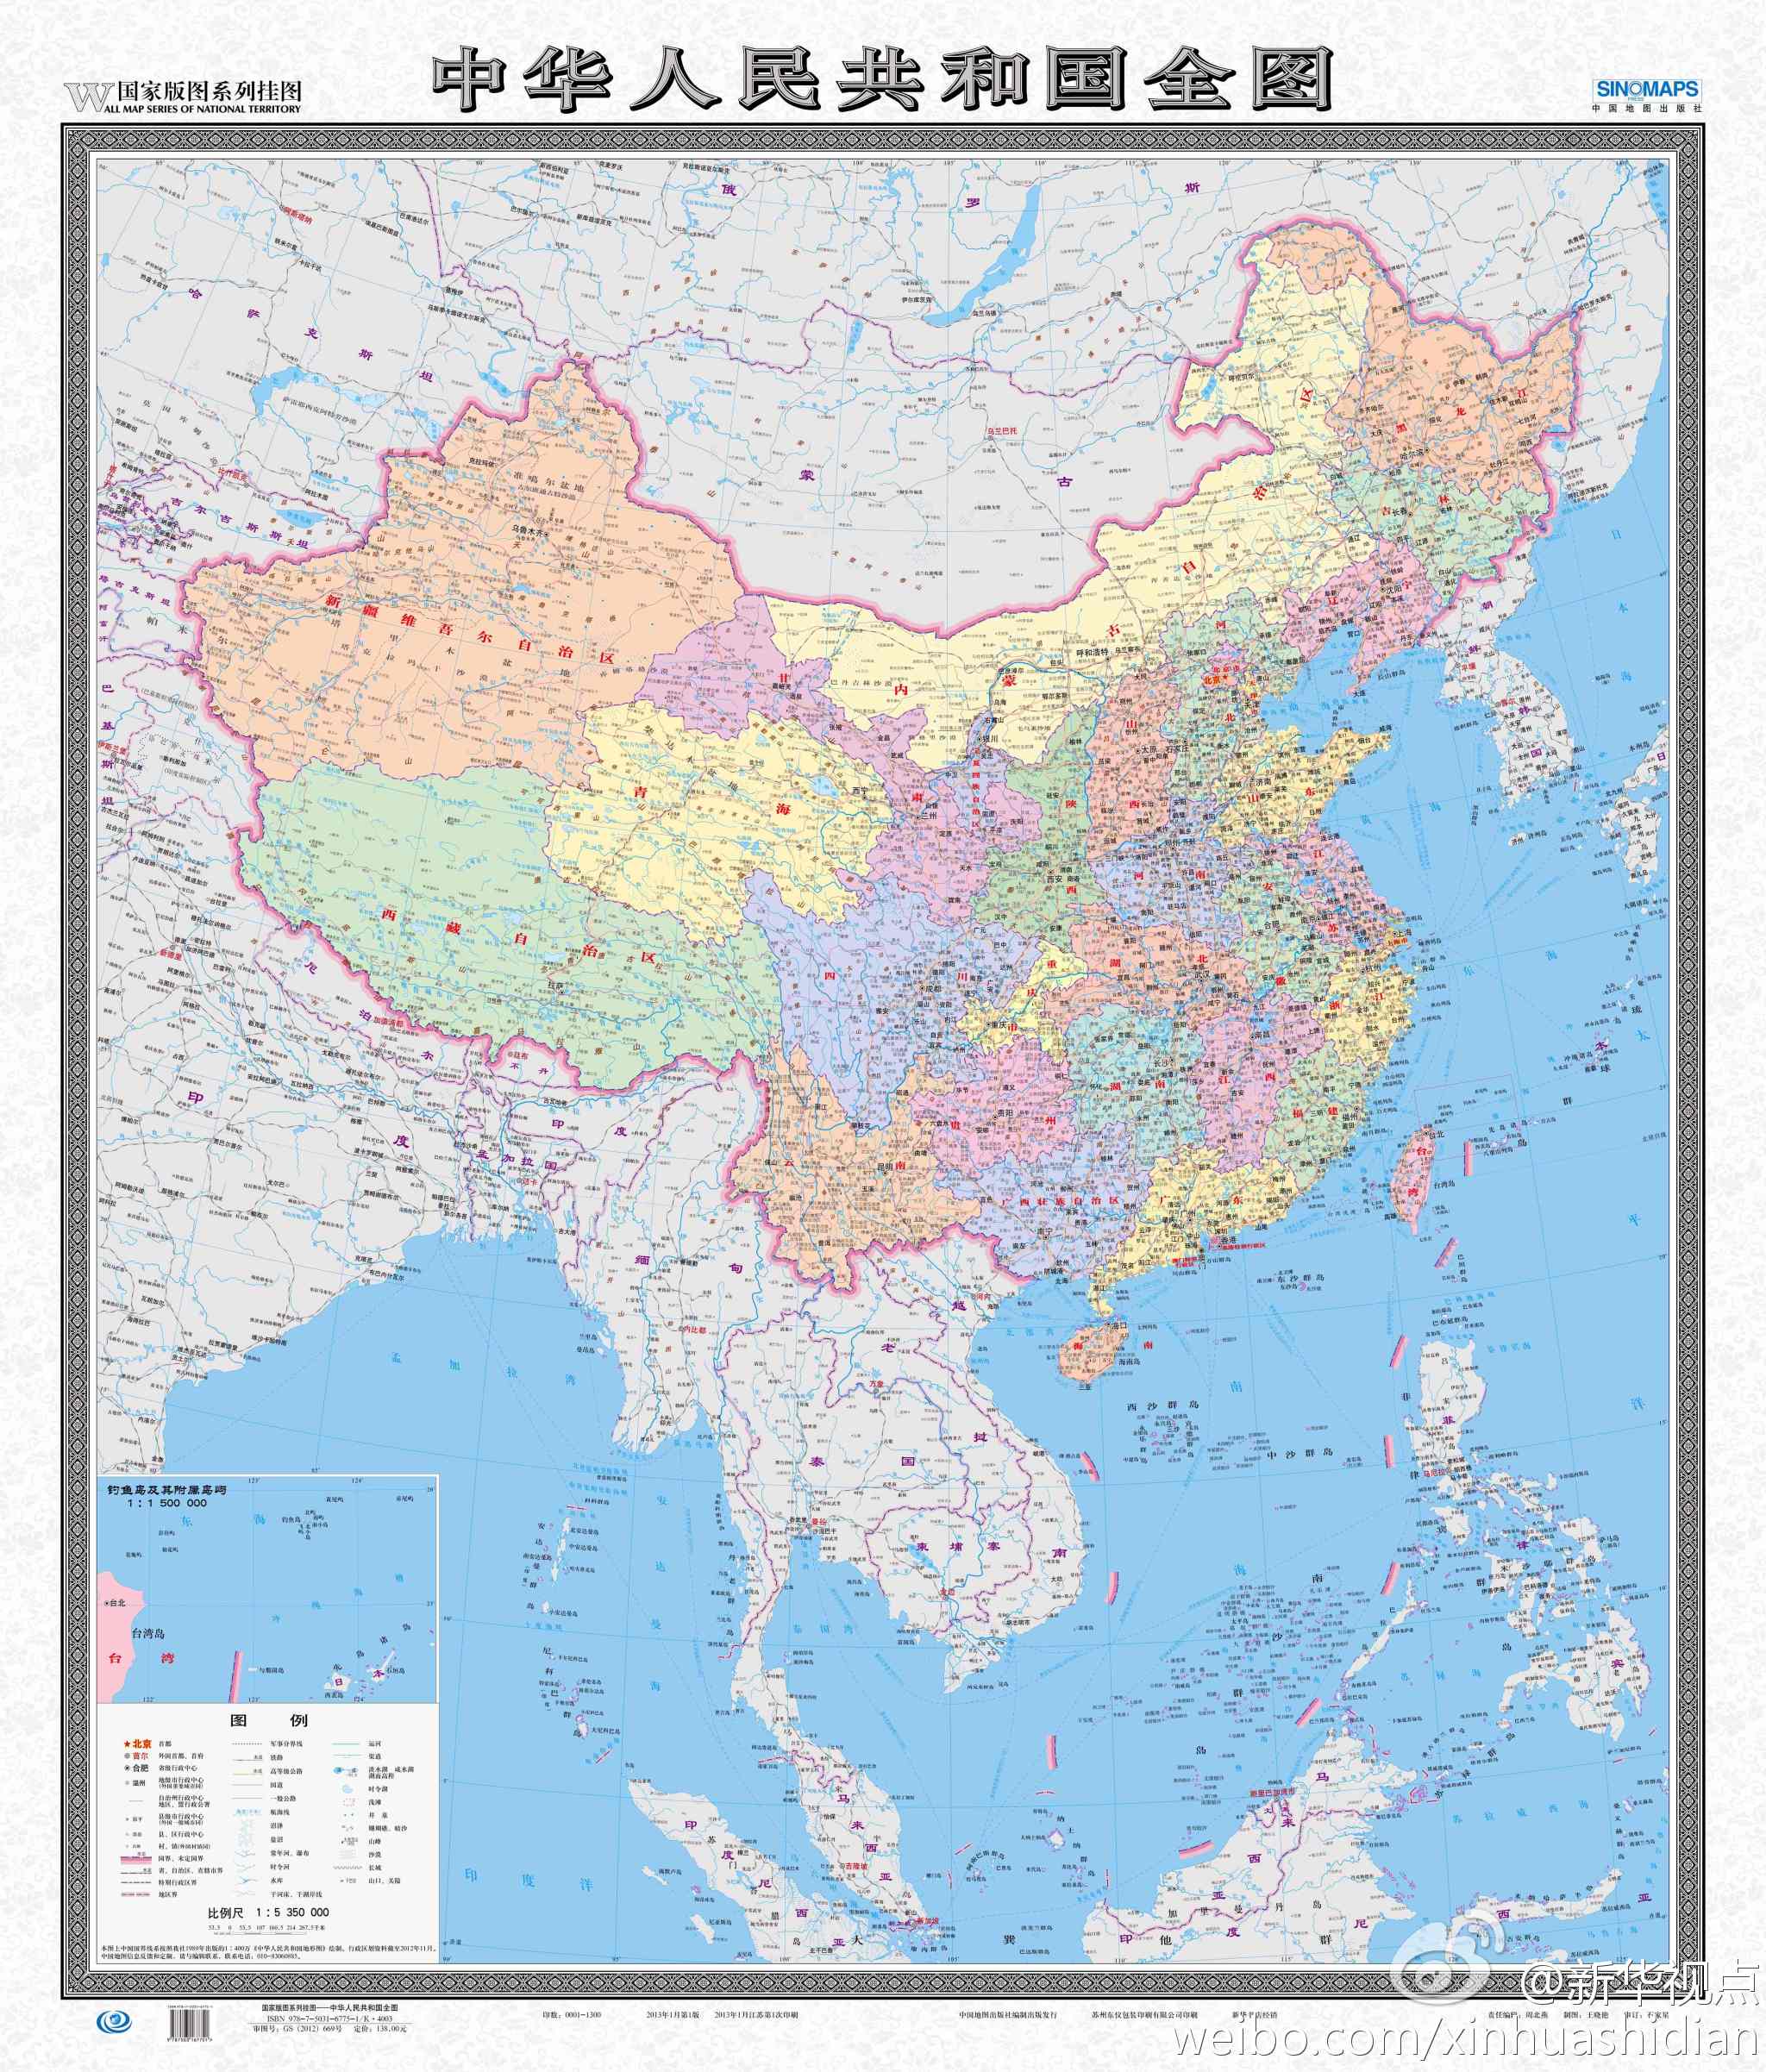 新版中国地图亮相 全景呈现陆海疆域-搜狐证券